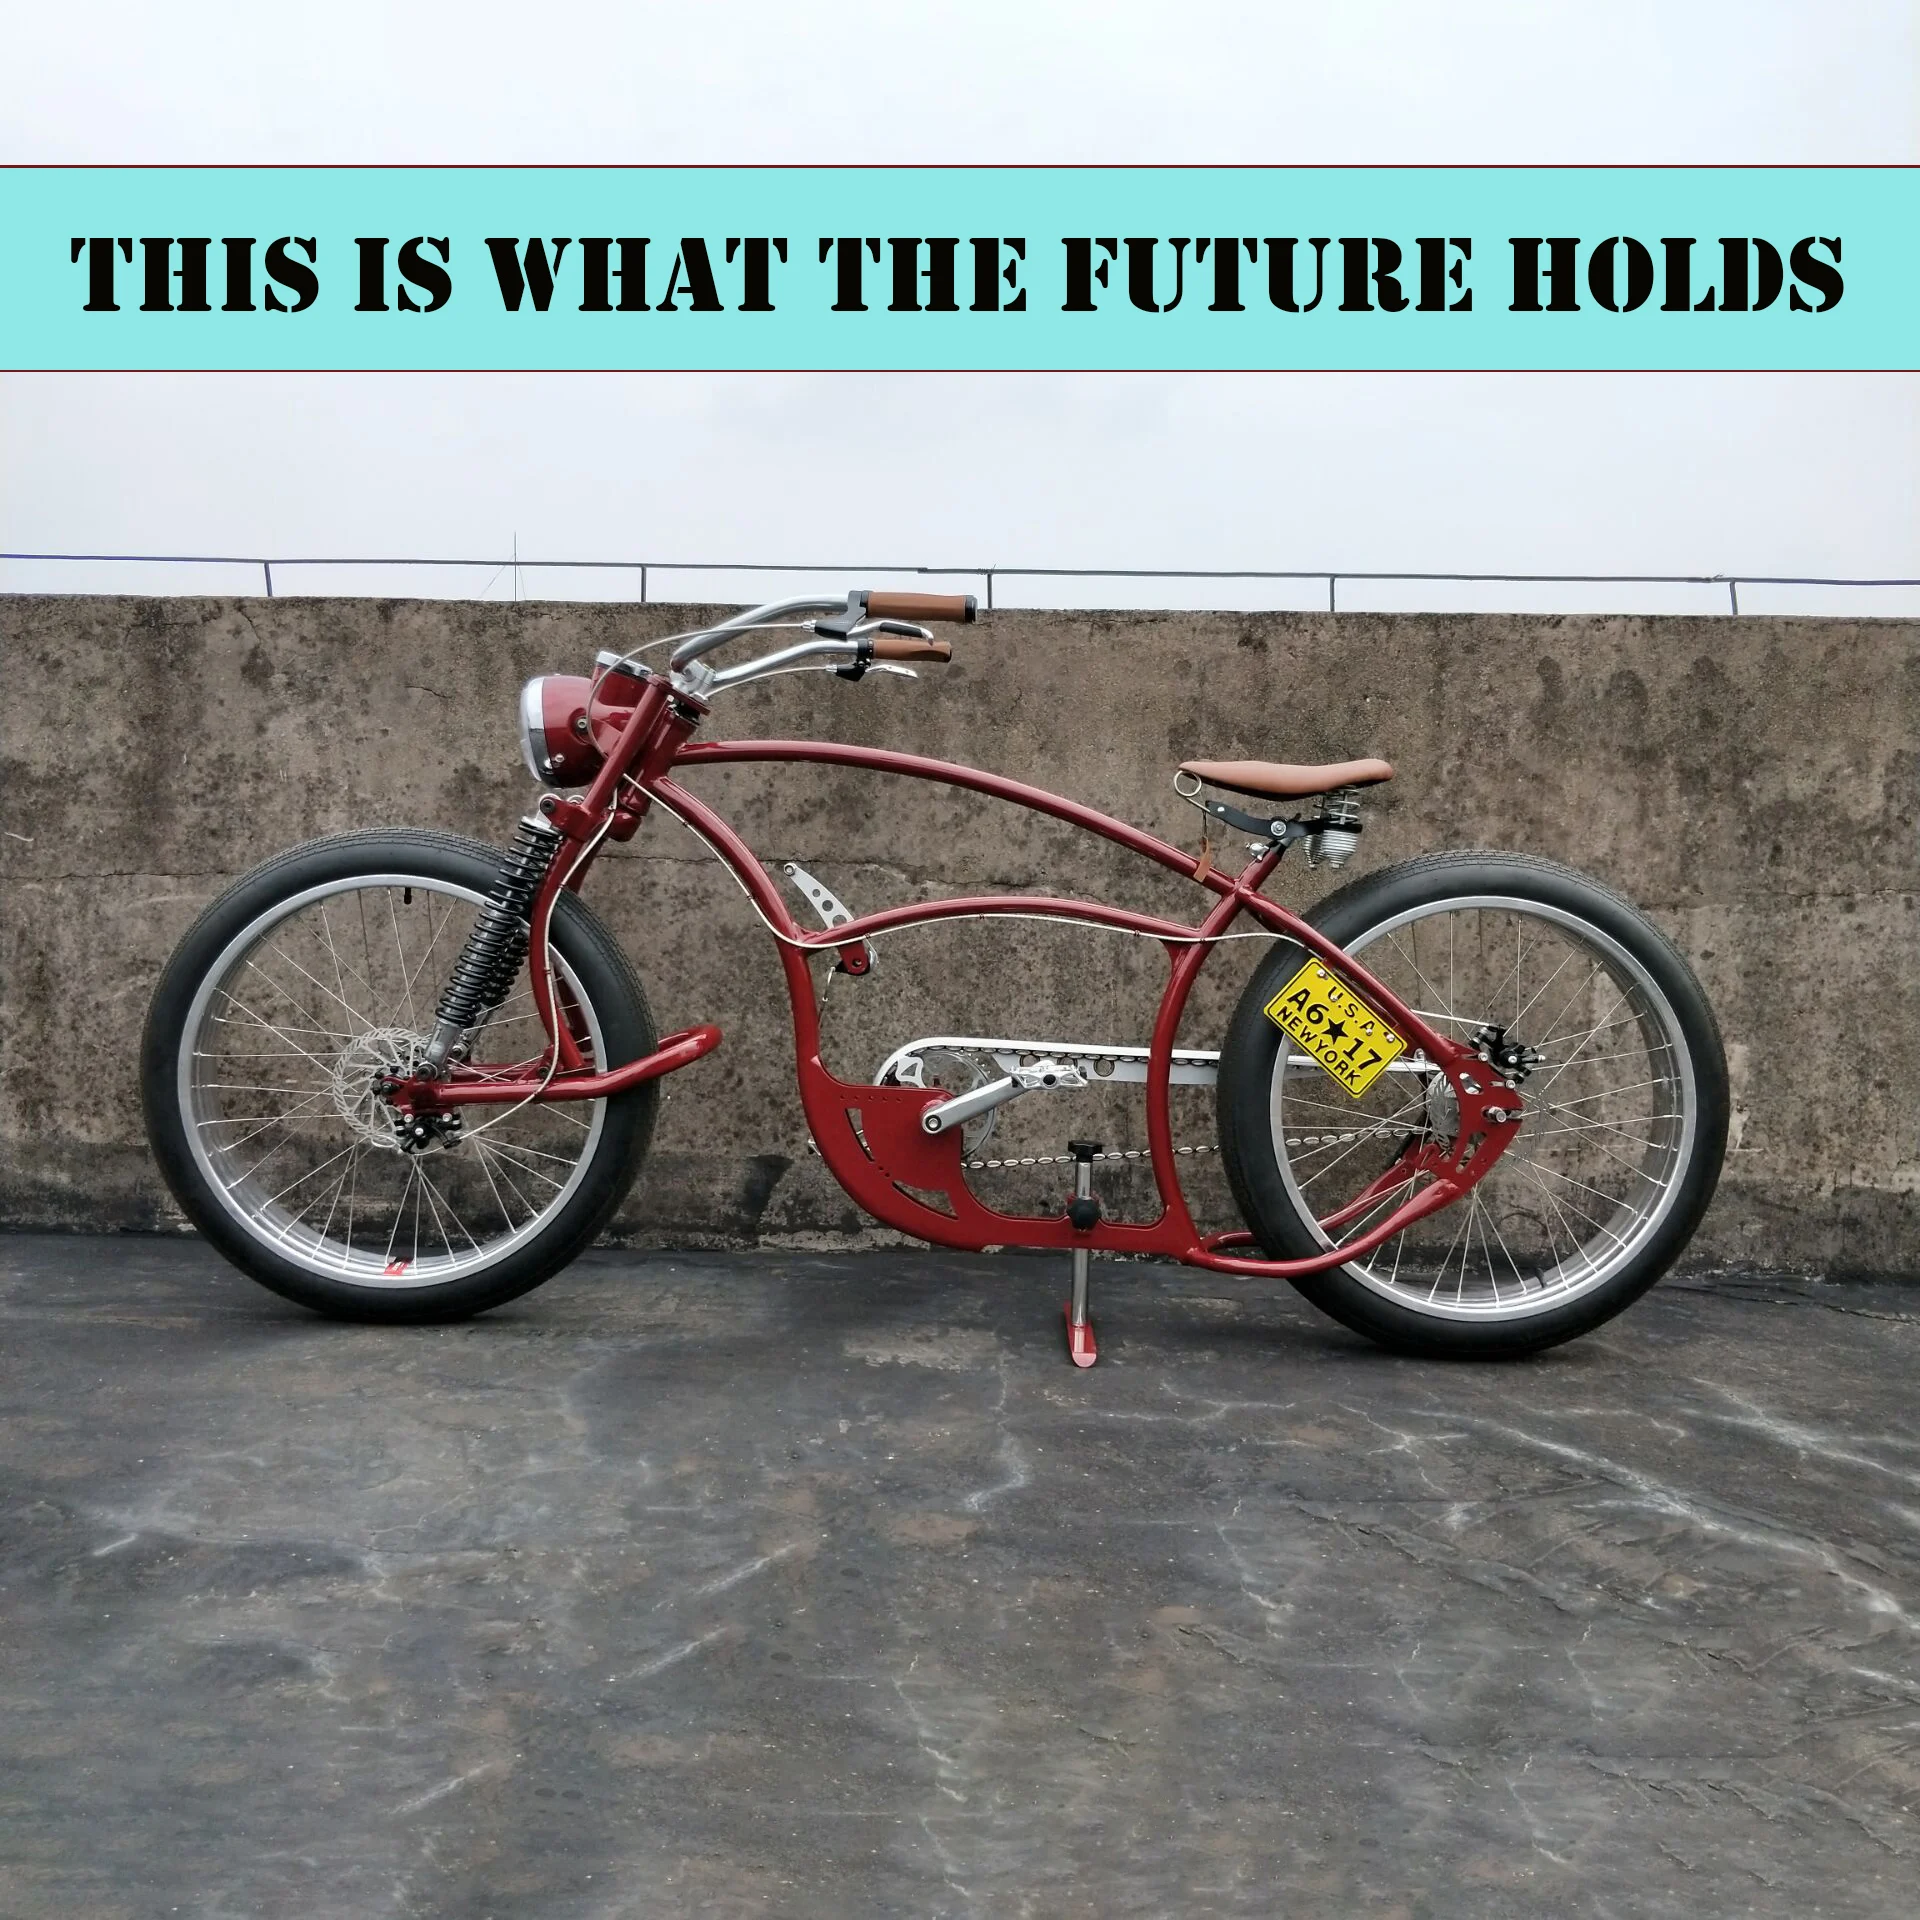 Prototipo de bicicleta medida de alta gama, Chopper de alta moda, Motor Gas bicicleta de mano para el futuro, bicicleta con impresión - AliExpress Deportes y entretenimiento